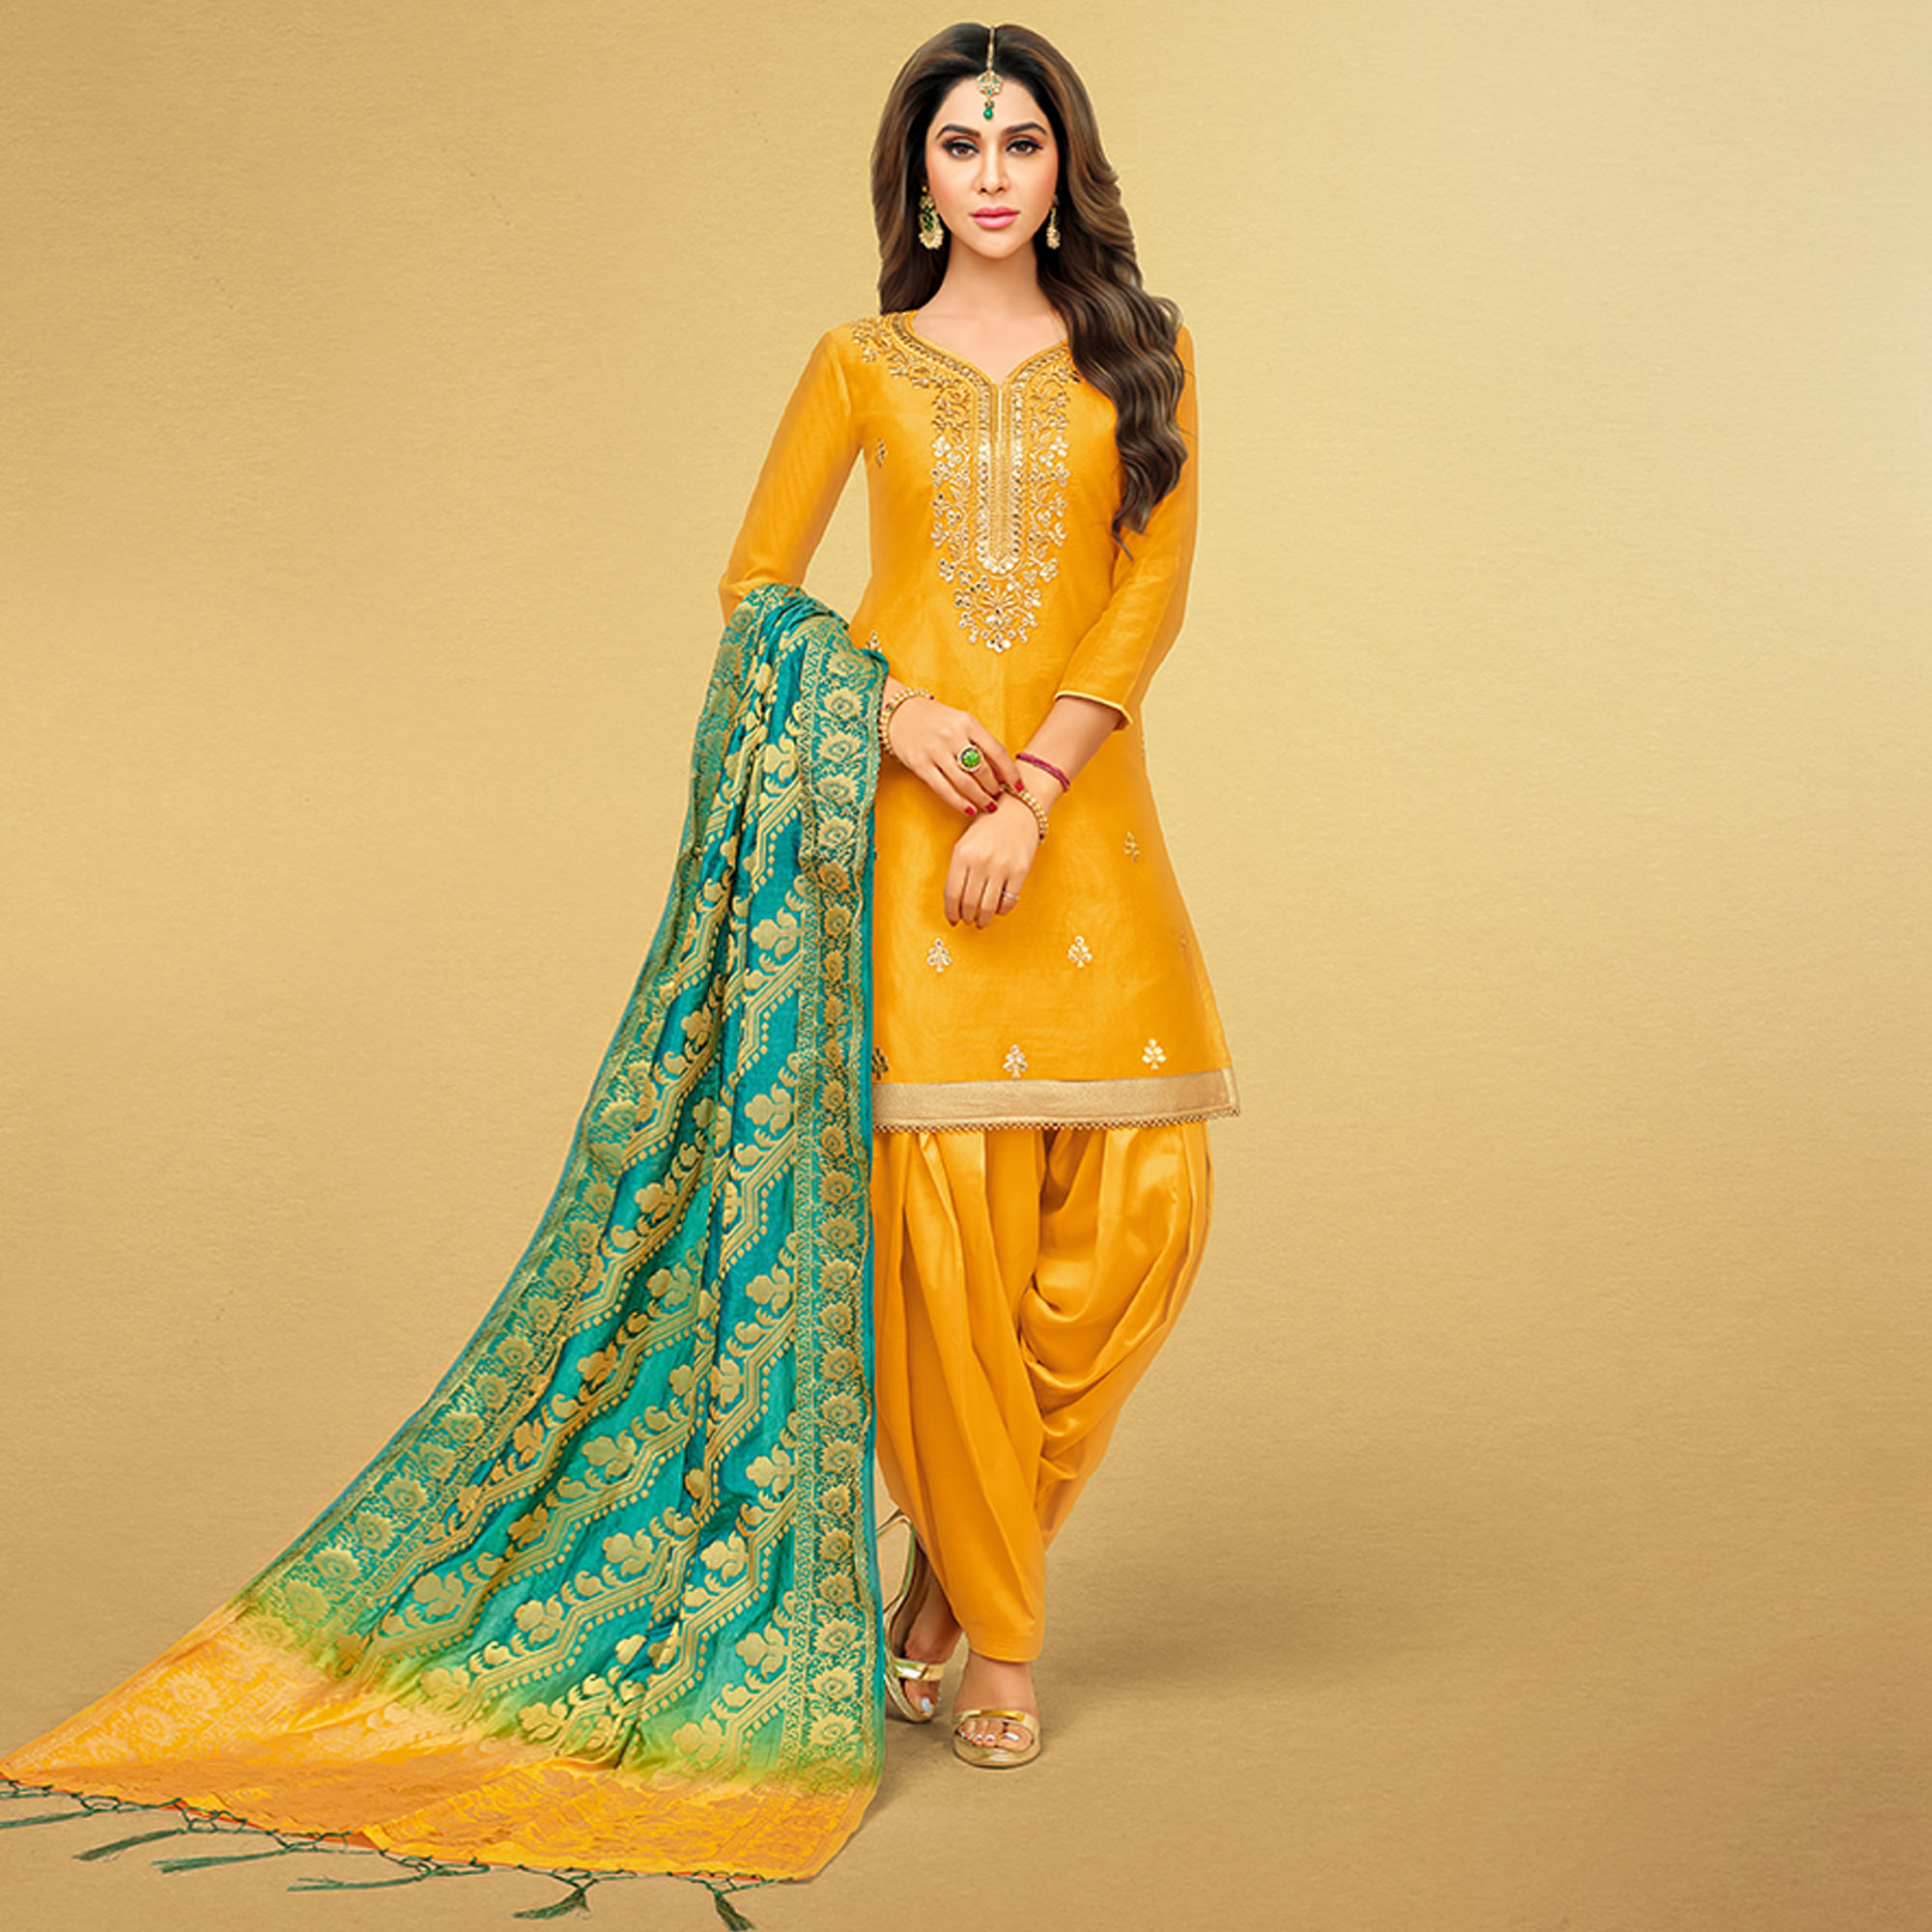 Top 8 Best Punjabi Suits New designs 2021 women's ethnic